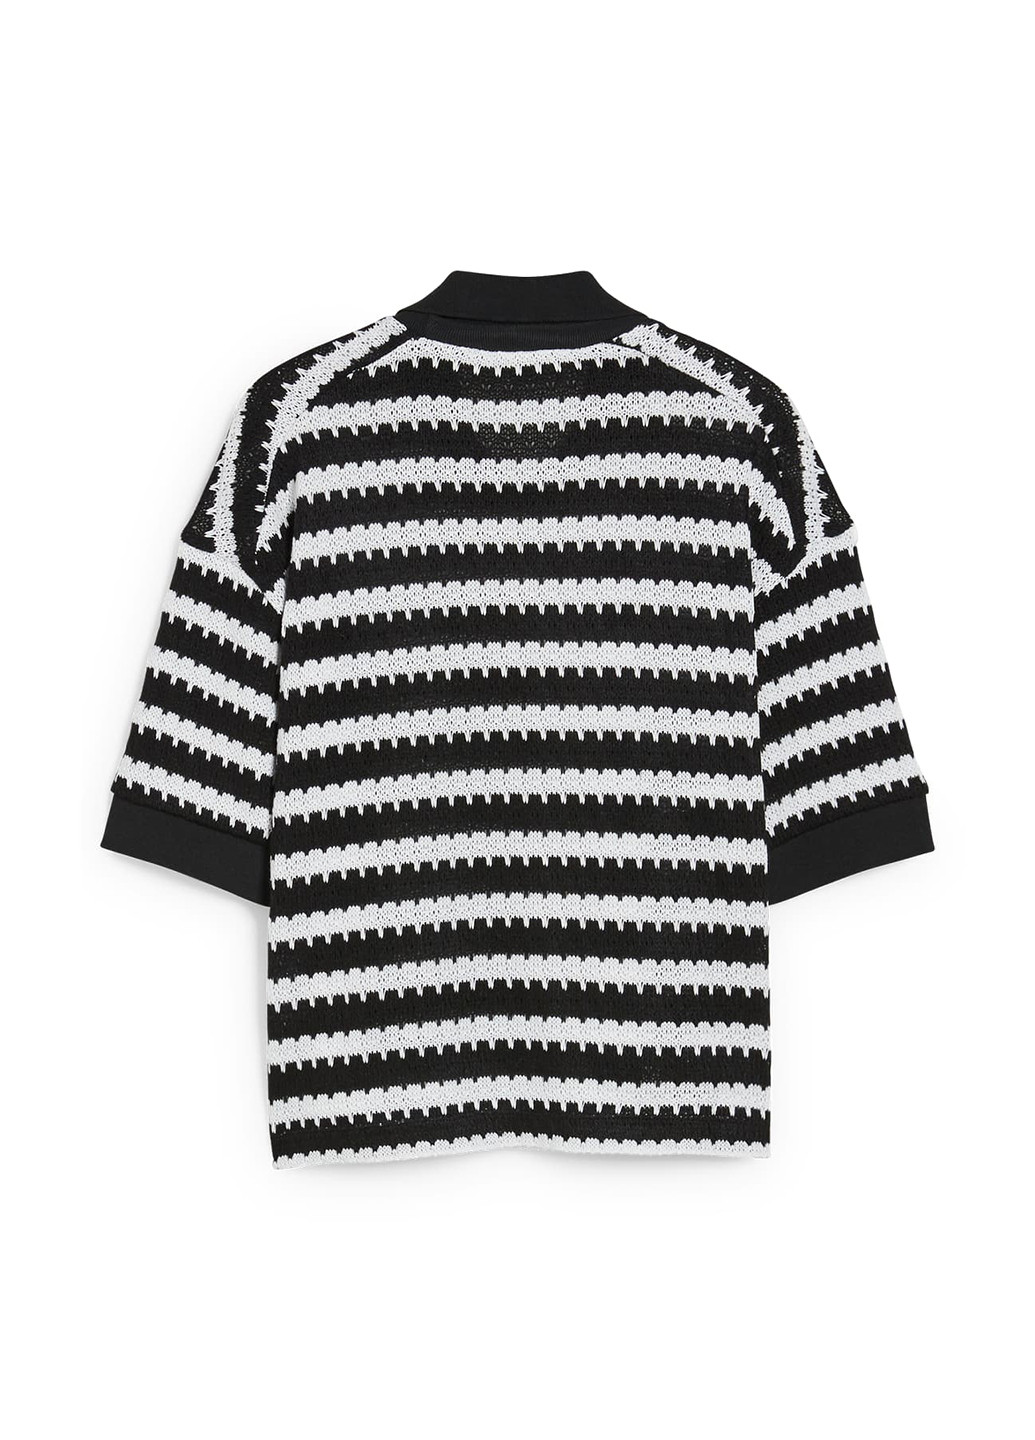 Черно-белый летний свитер C&A